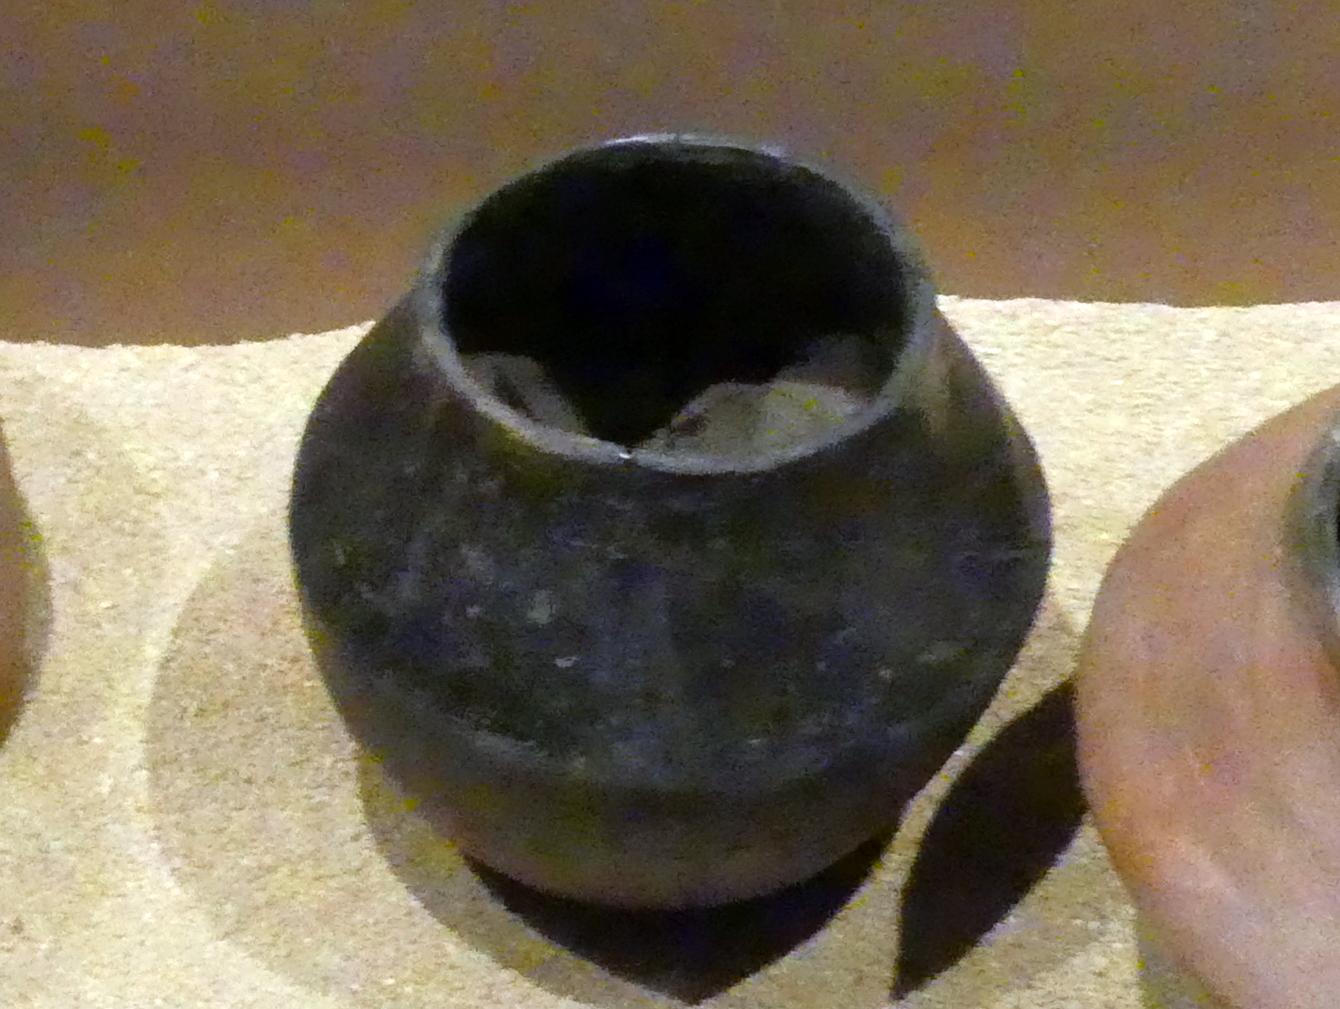 Knickwandgefäß mit schwarzer Politur, A-Gruppe, 3200 - 3000 v. Chr., 3100 - 3000 v. Chr.